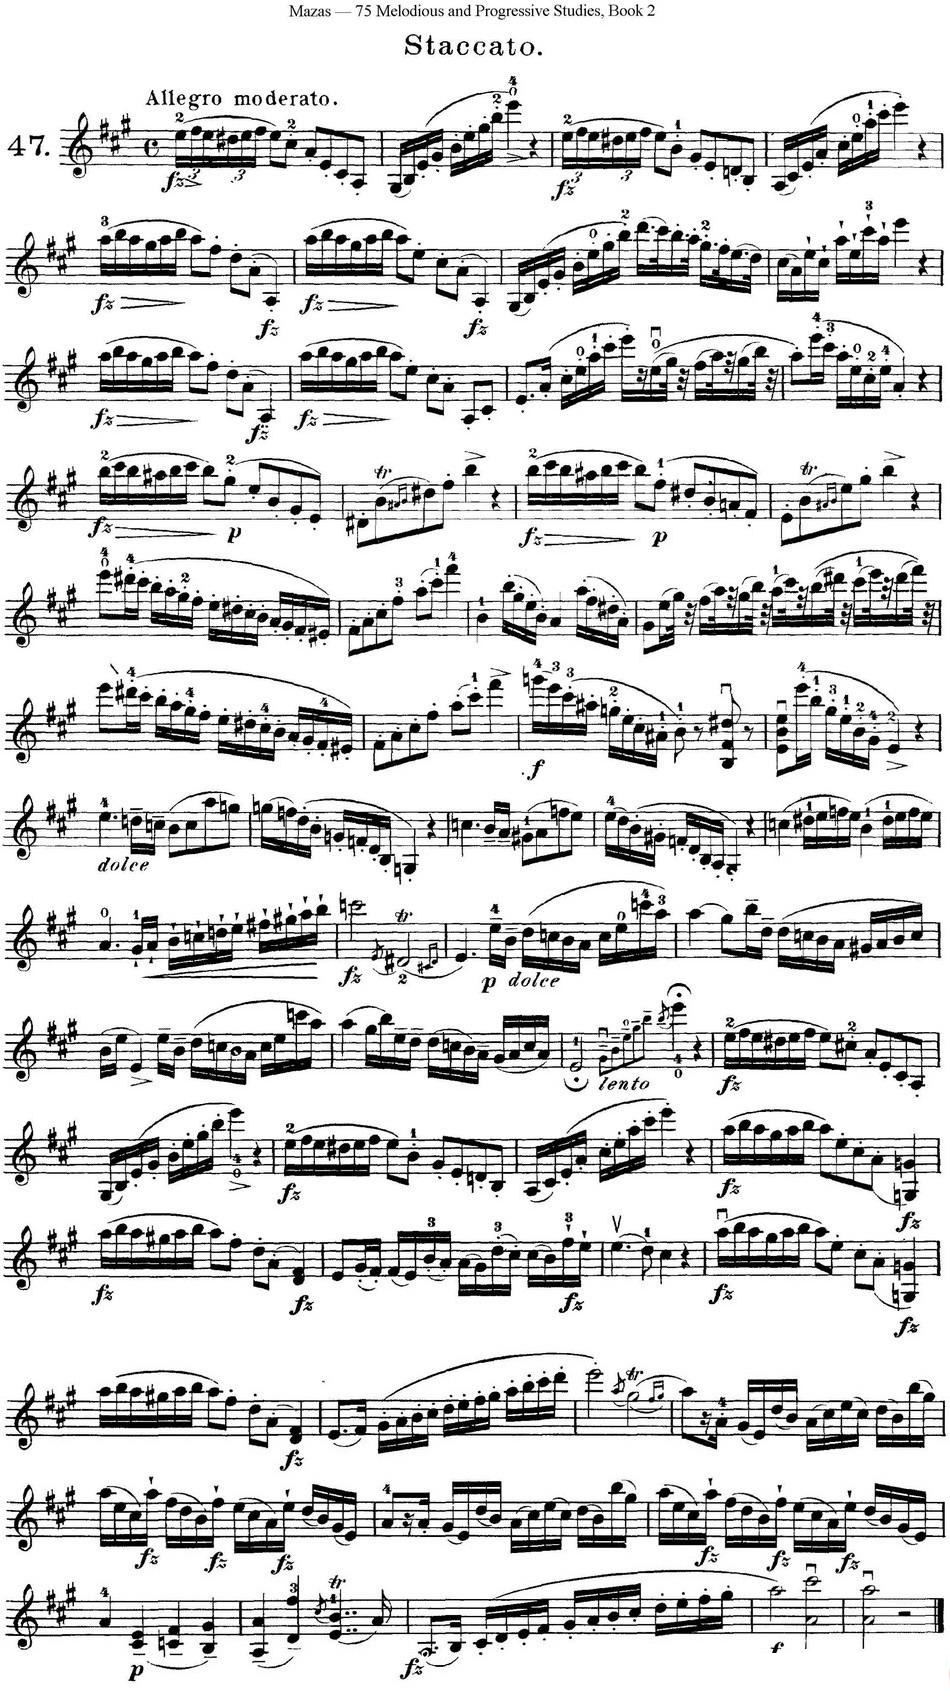 马扎斯小提琴练习曲 Op.36 第二册 华丽练习曲（47）